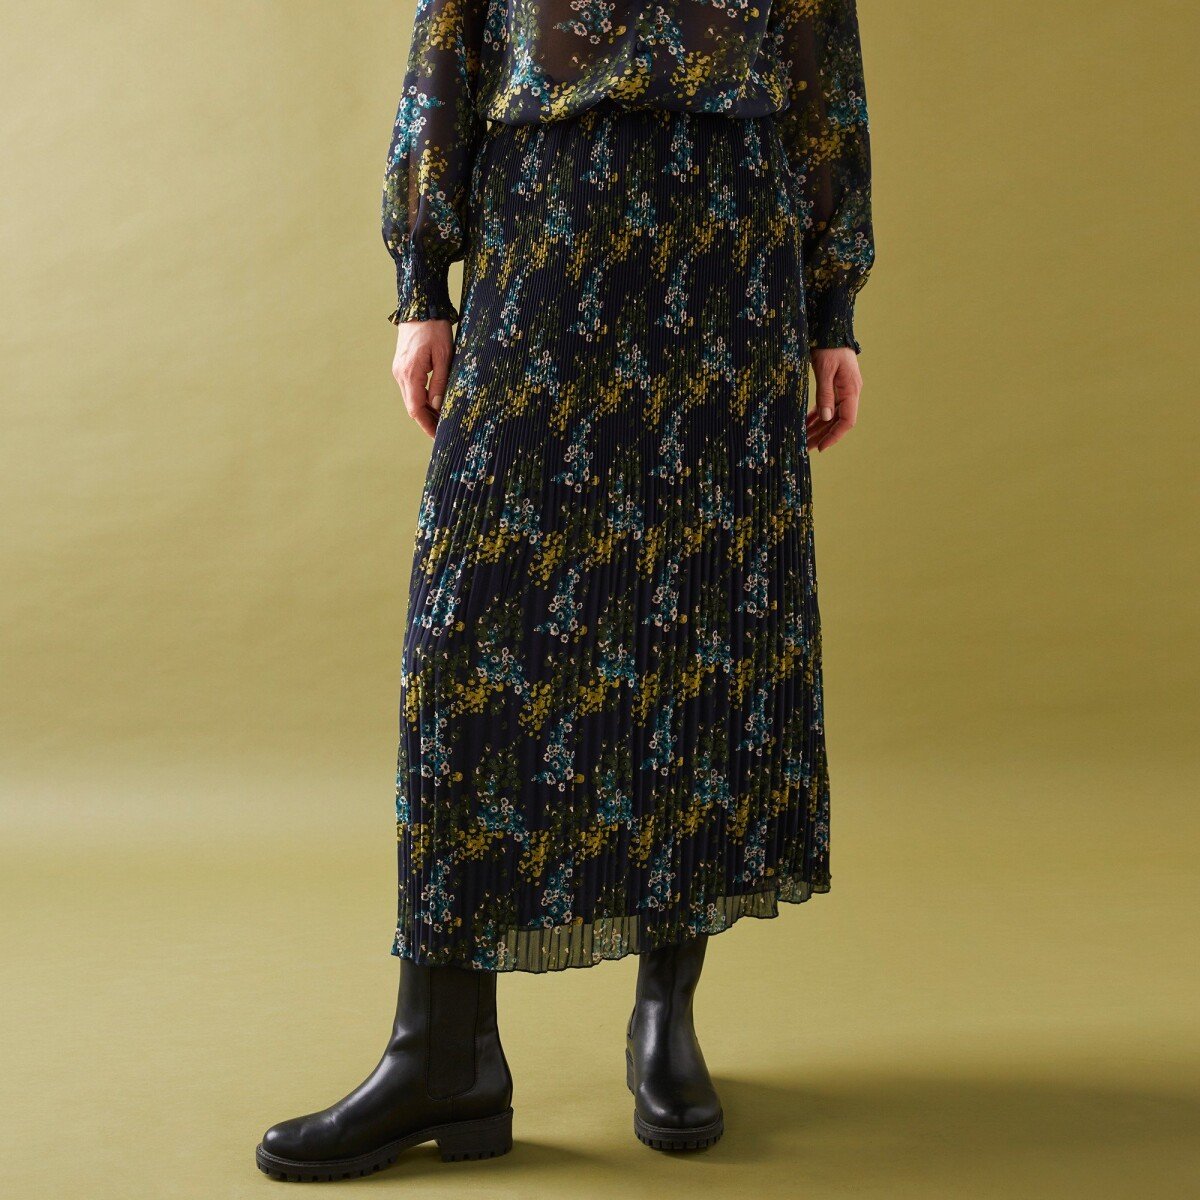 Blancheporte Plisovaná sukně s potiskem květin z recyklovaného polyesteru (1), pro malou post nám.modrákhaki 36